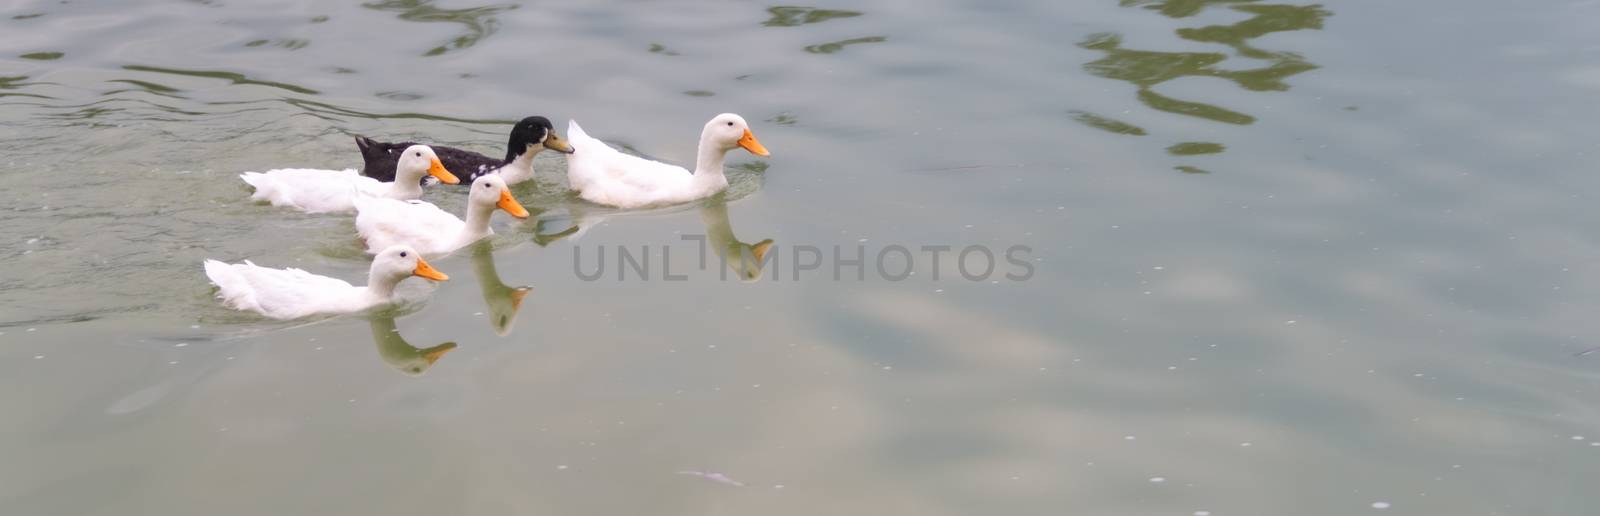 4 white ducks and a black duck swimming in a lake. by leo_de_la_garza